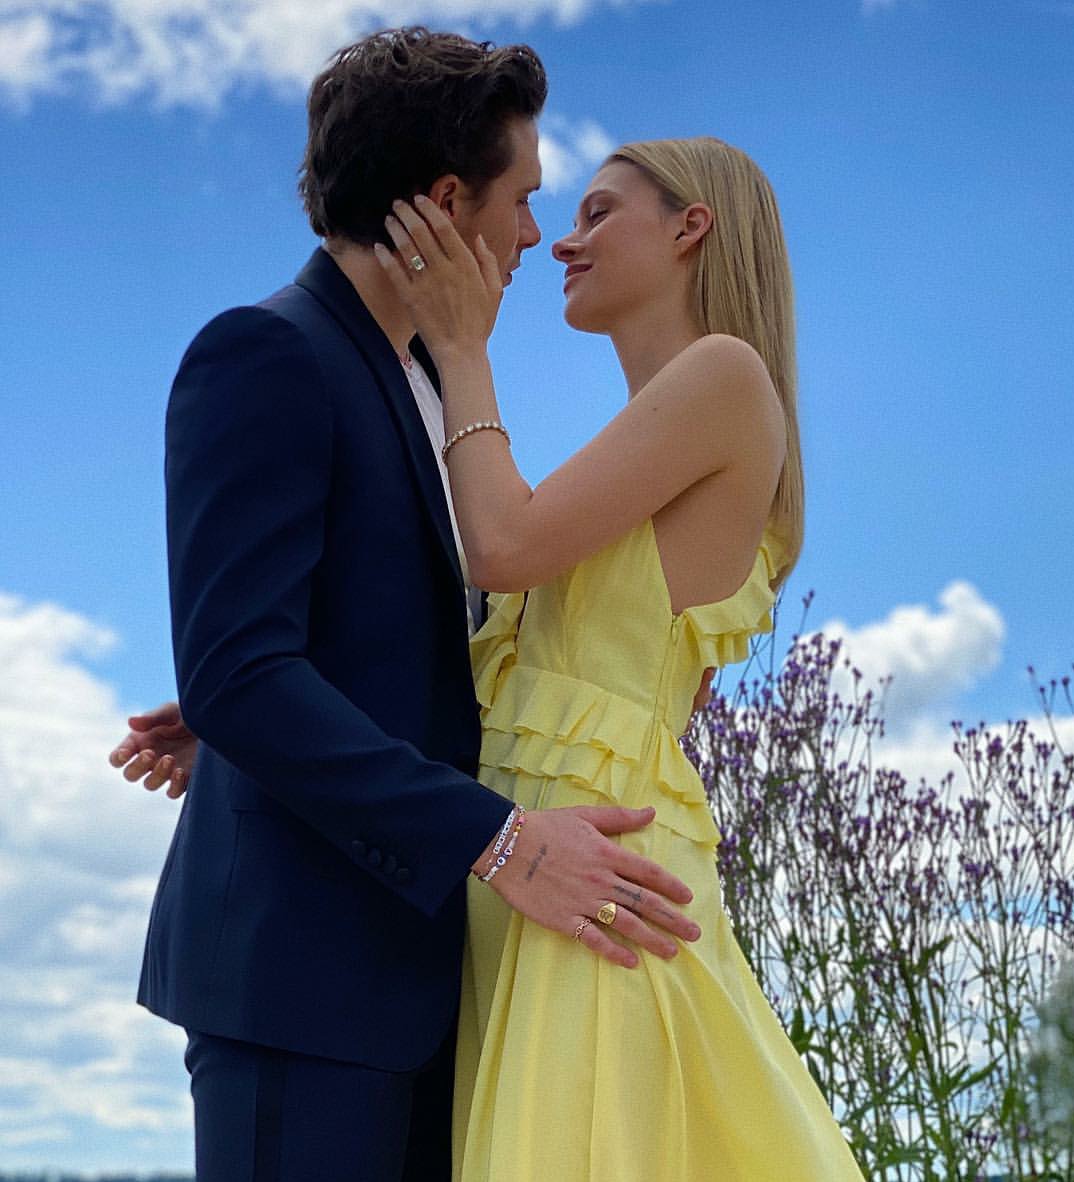 kaltak | Nicola Peltz, bir aylık evlilikten sonra büyük ölçüde 'yükseltilmiş' bir nişan yüzüğü aldı